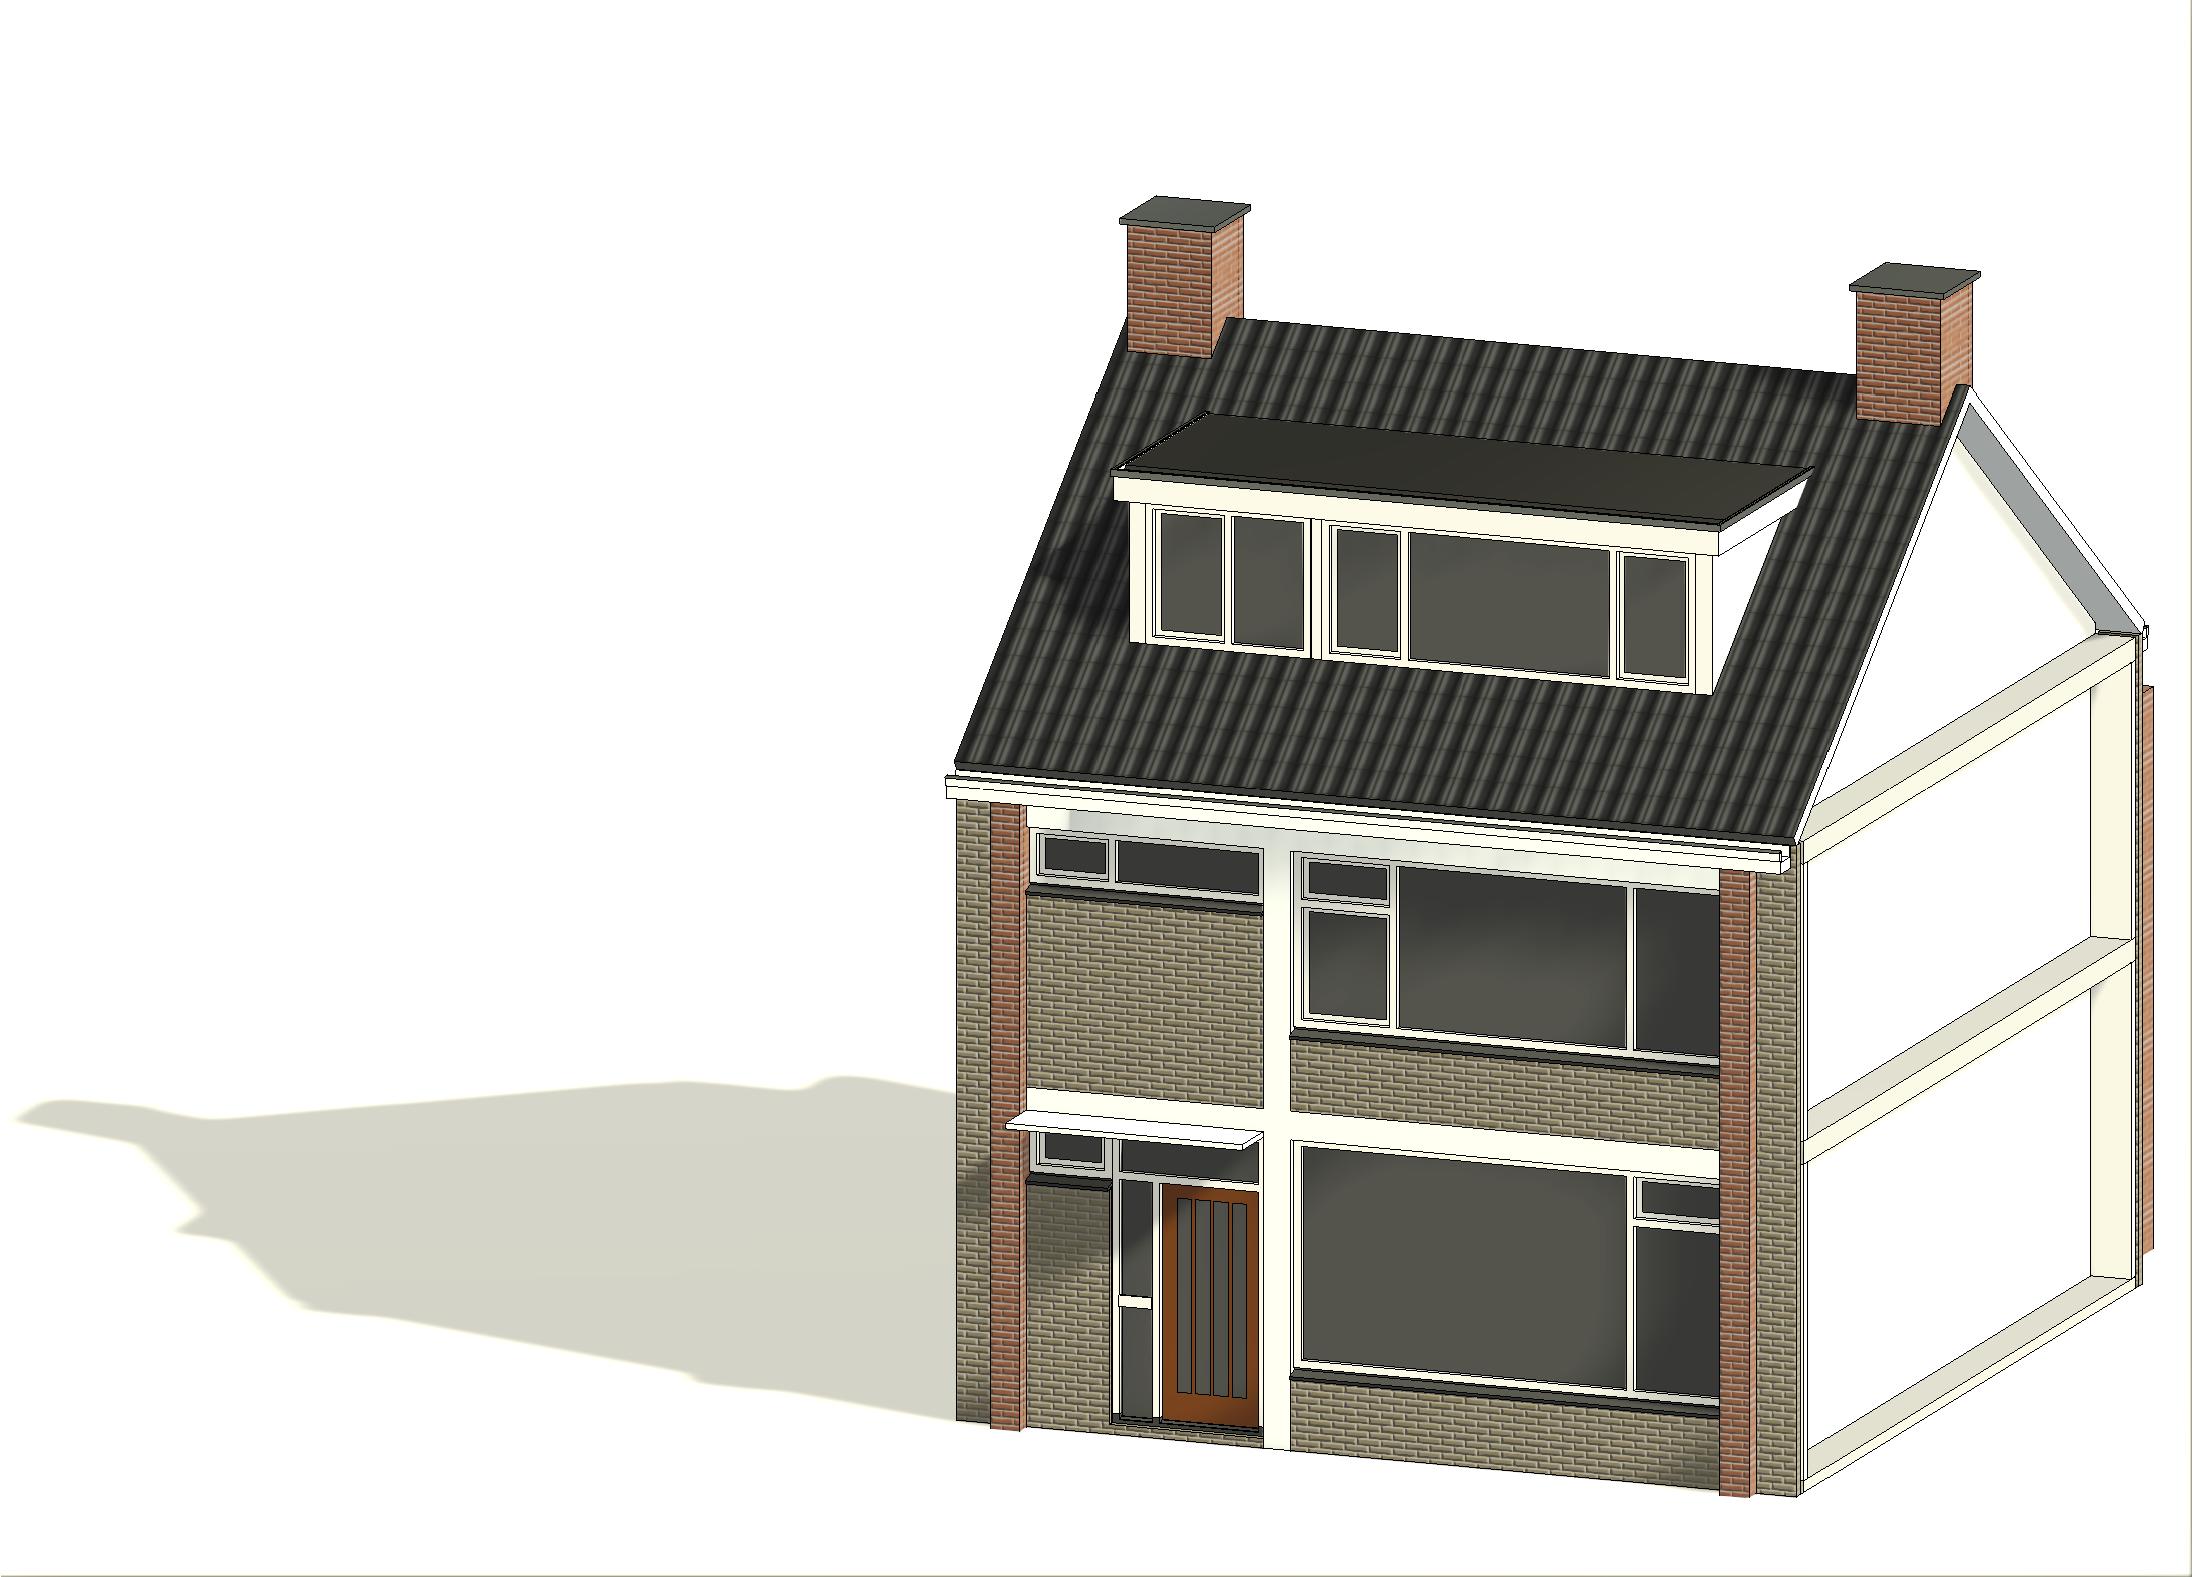 architect tekenbureau dakkapel voorgevel alphen aan den rijn bouwtekening 3D visualisatie voor